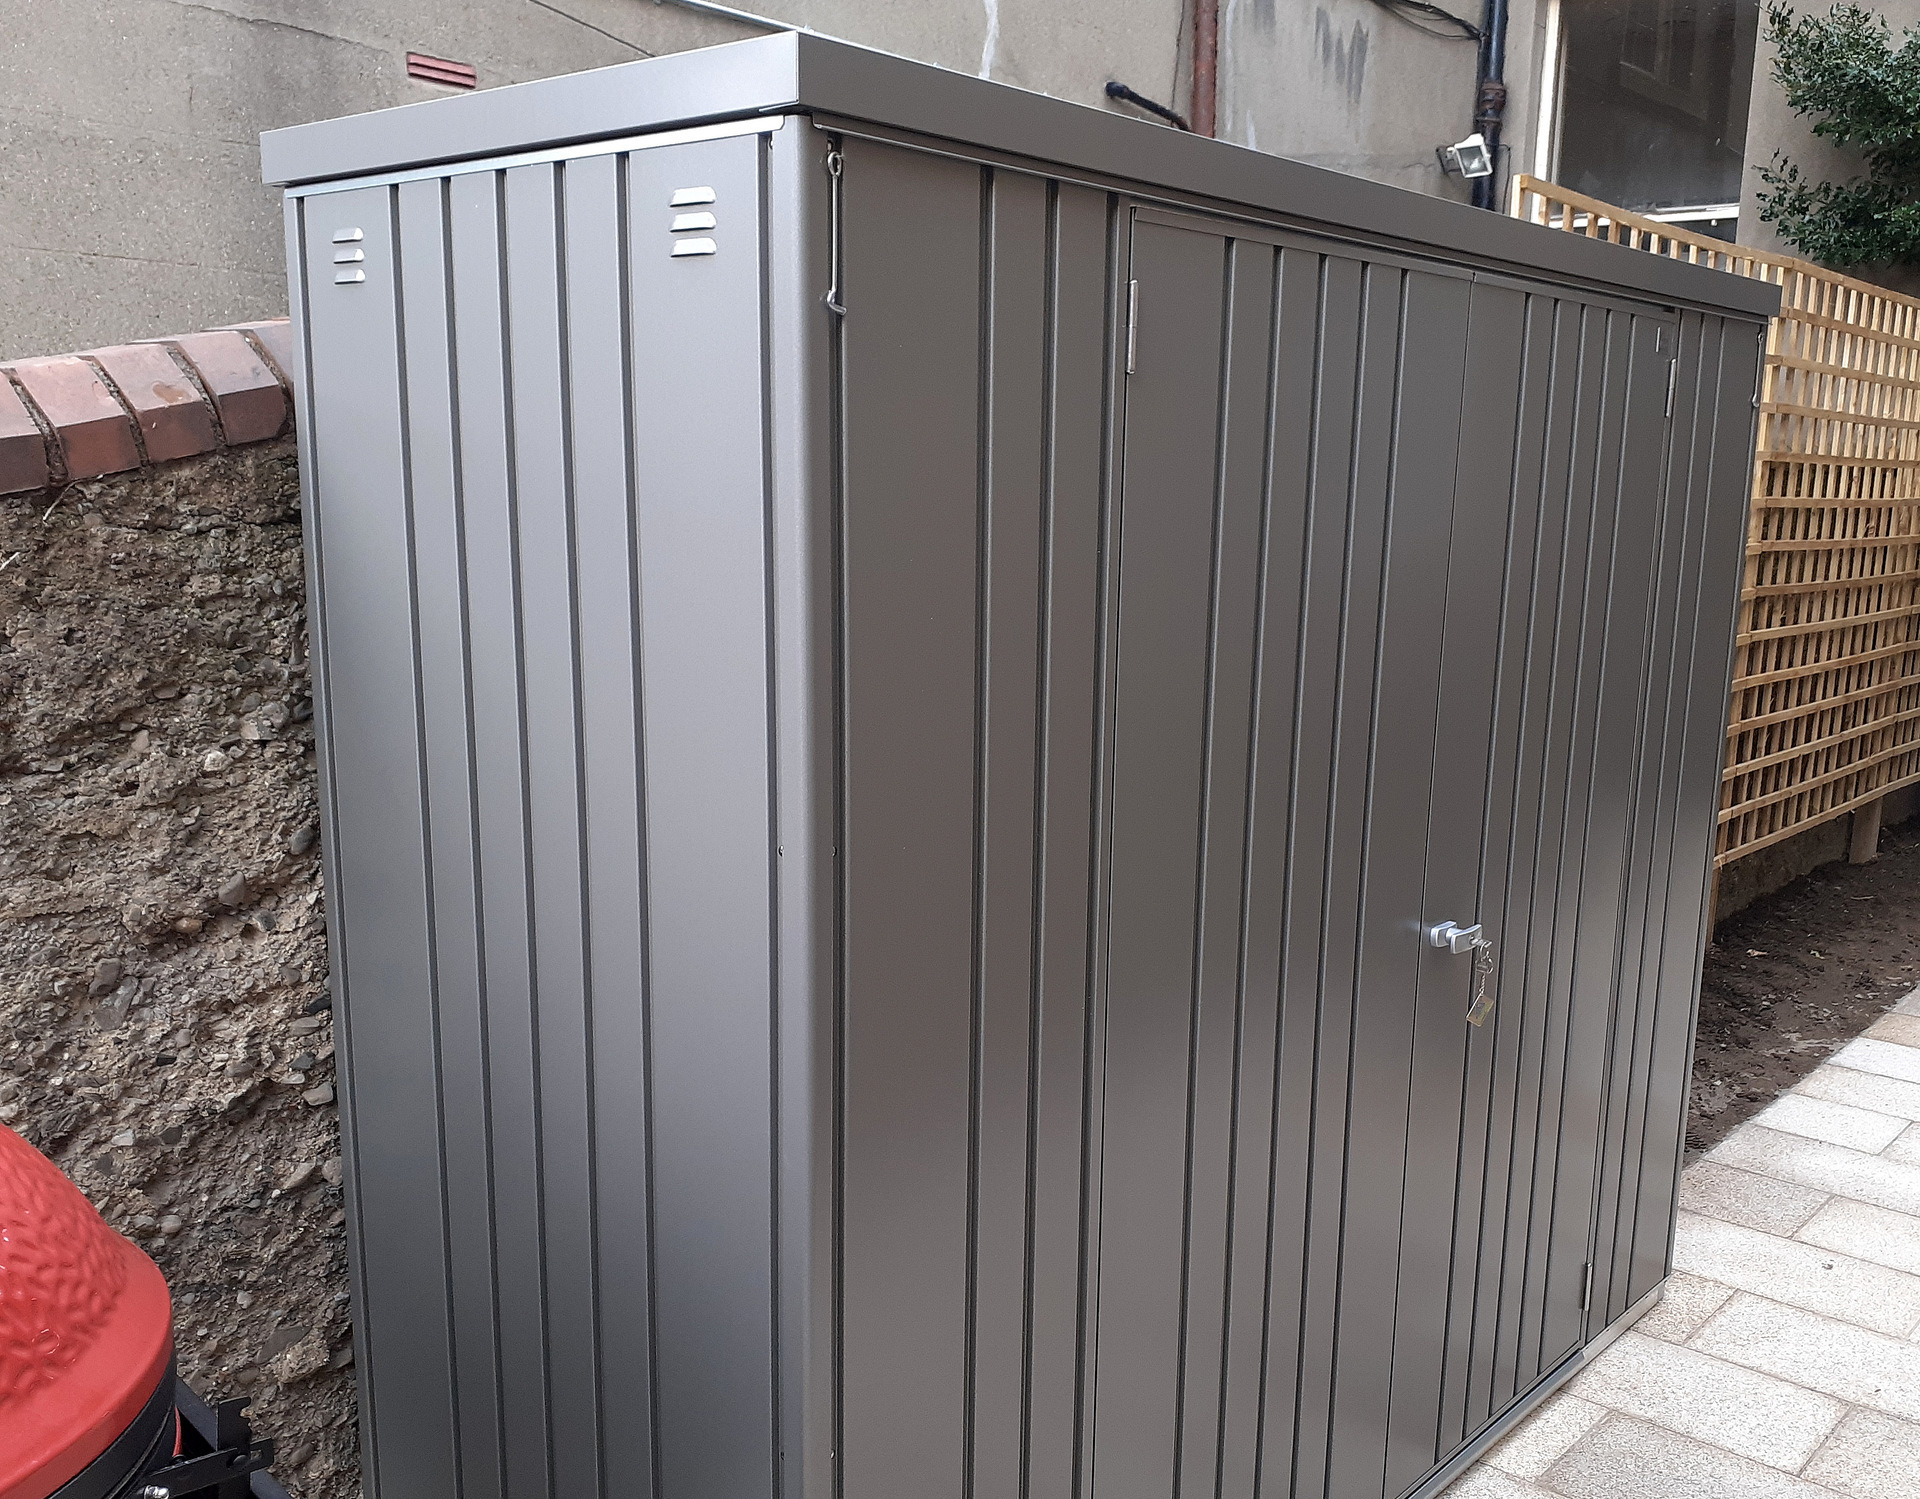 Biohort Equipment Locker 230 in metallic quartz grey, supplied + fitted in Rathgar, Dublin 6  | Stylish, Versatile, Secure & Rainproof Garden Storage Solution